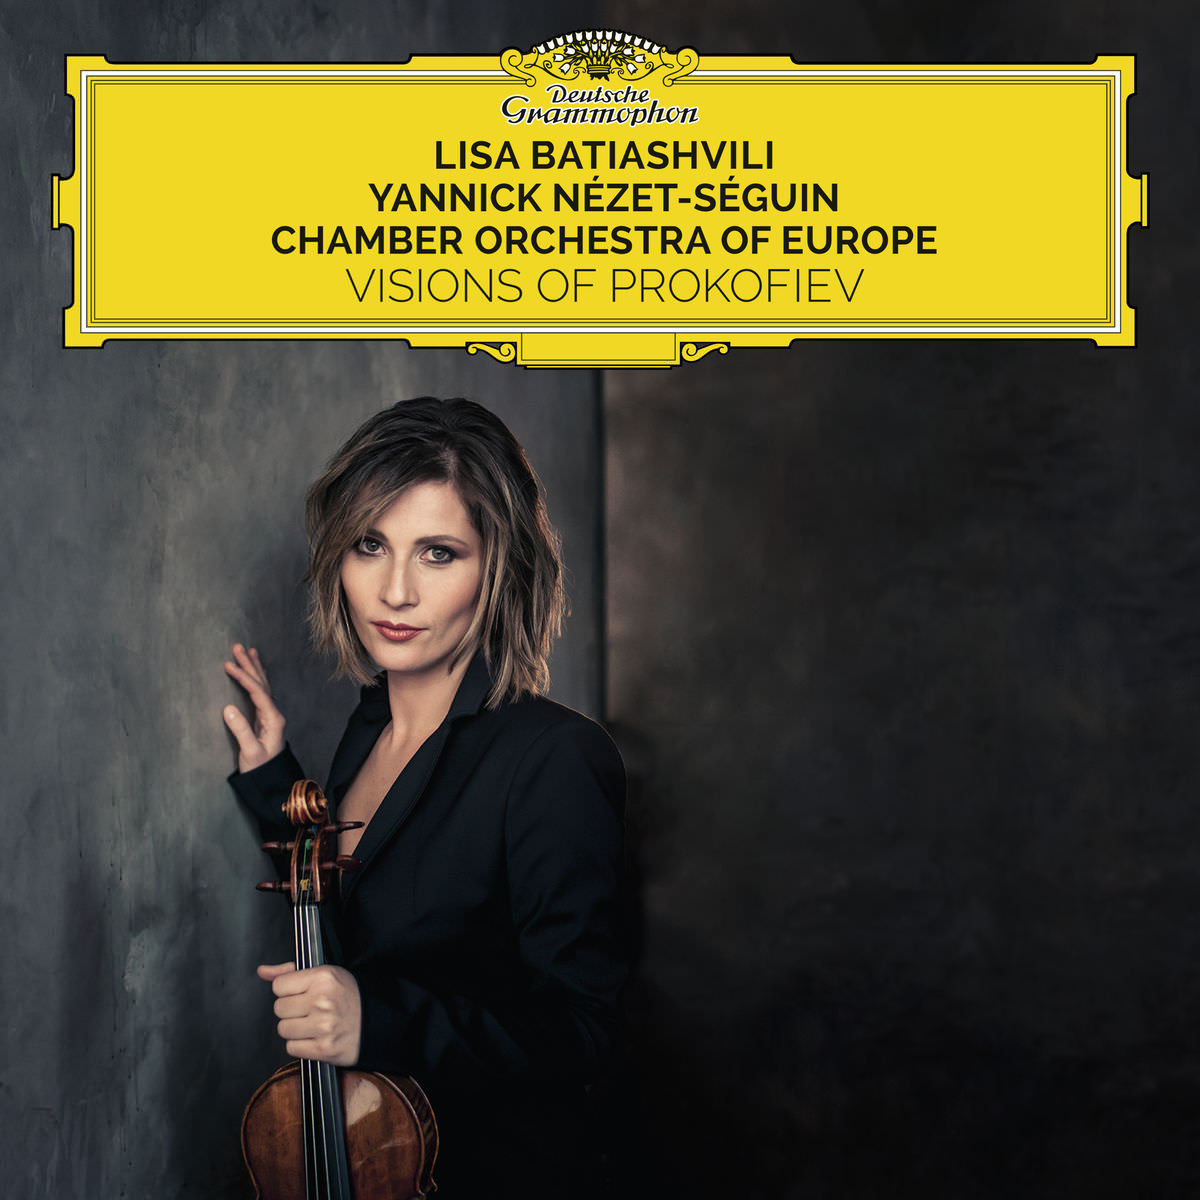 Lisa Batiashvili, Chamber Orchestra of Europe & Yannick Nezet-Seguin - Visions Of Prokofiev (2018) [FLAC 24bit/96kHz]